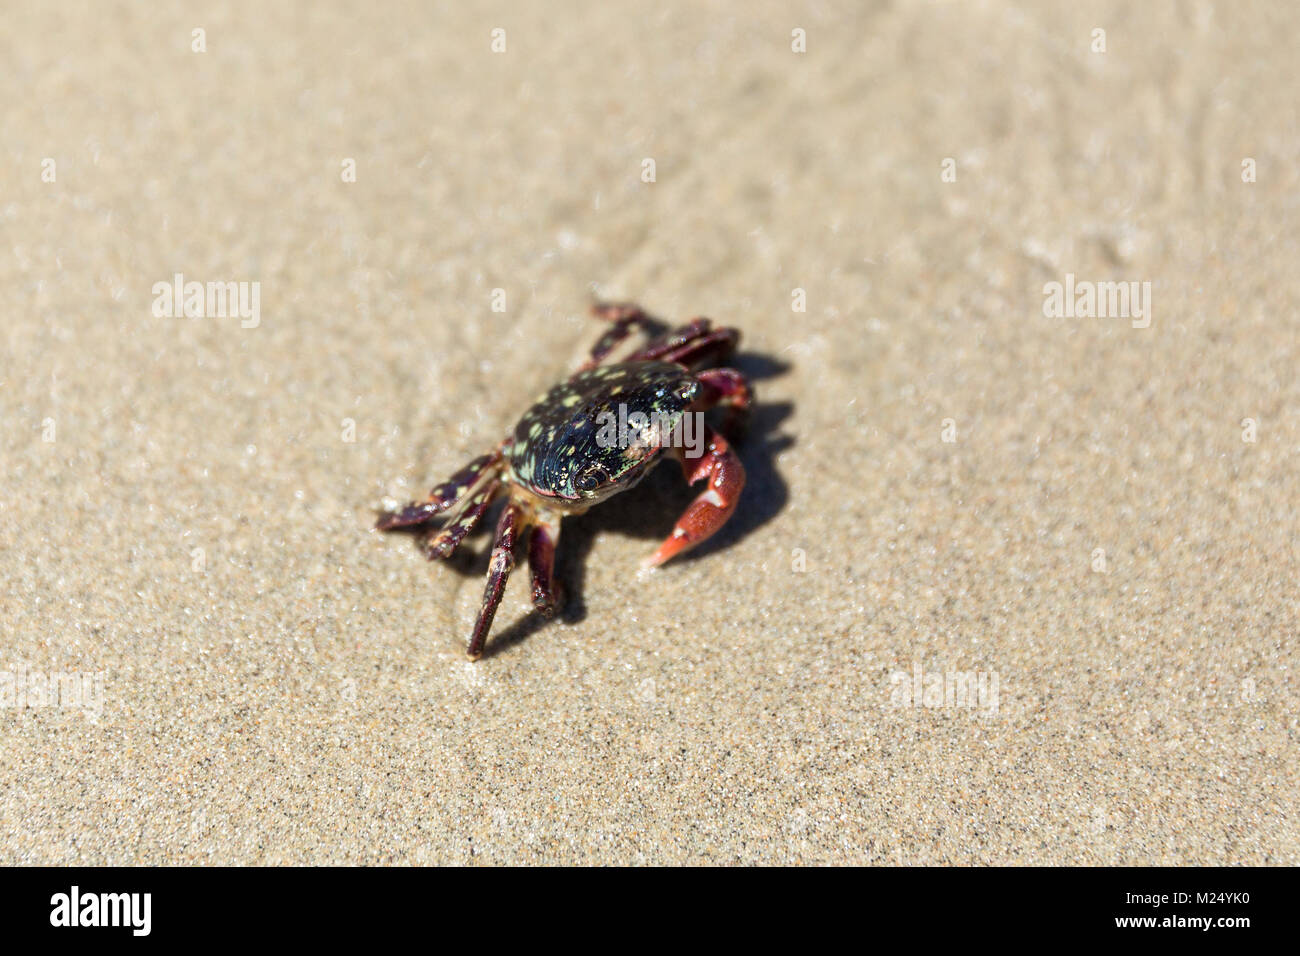 Crabe tacheté walking on beach Banque D'Images